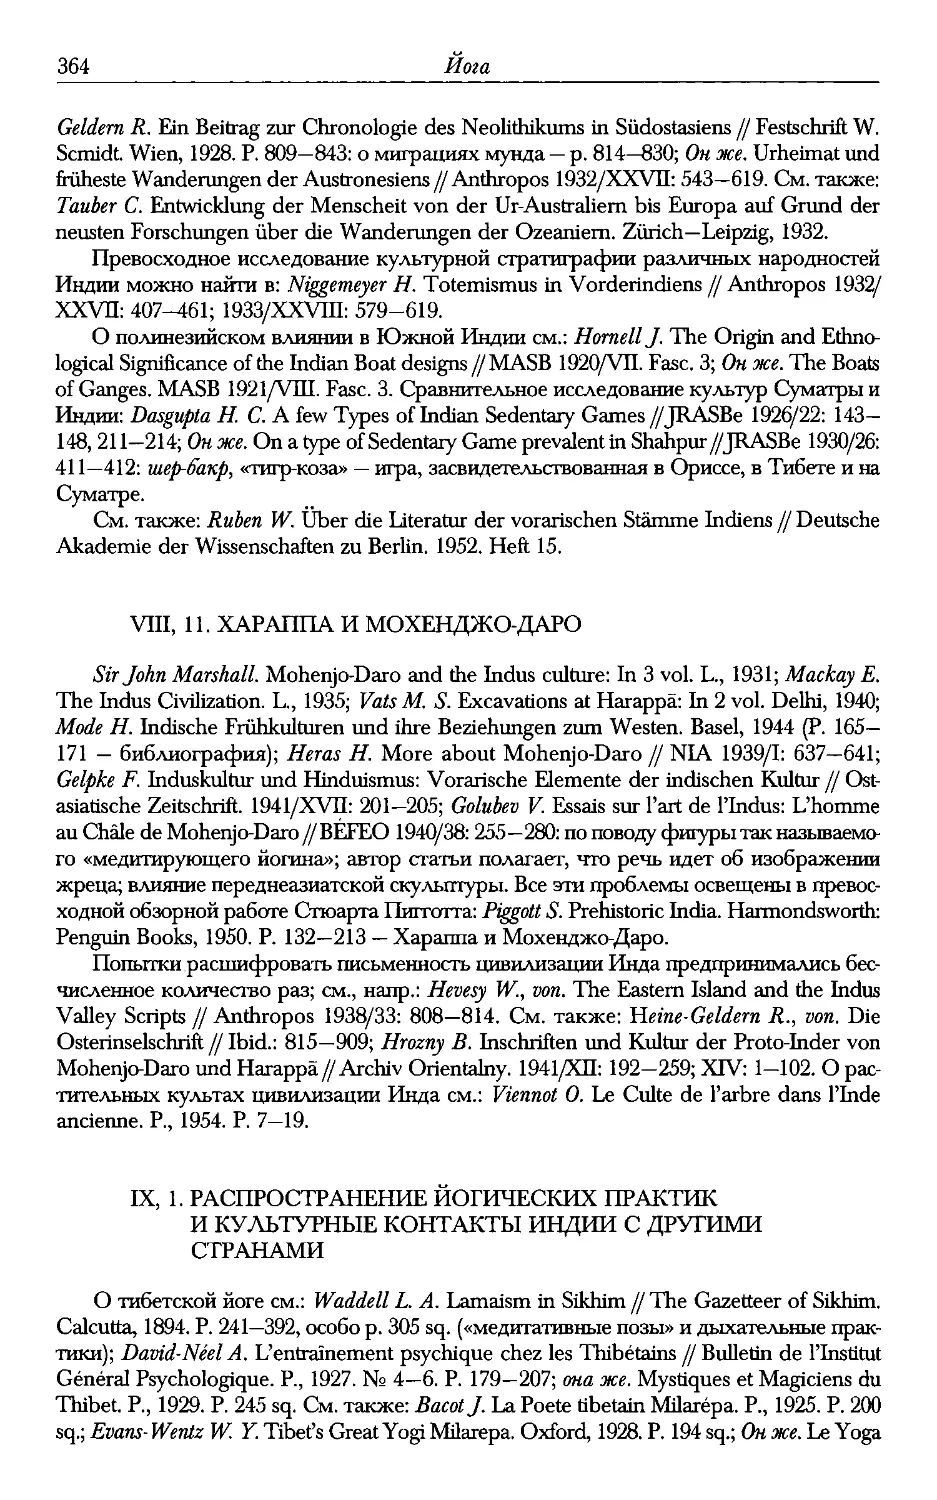 ﻿11. Хараппа и Мохенджо-Дар
IX